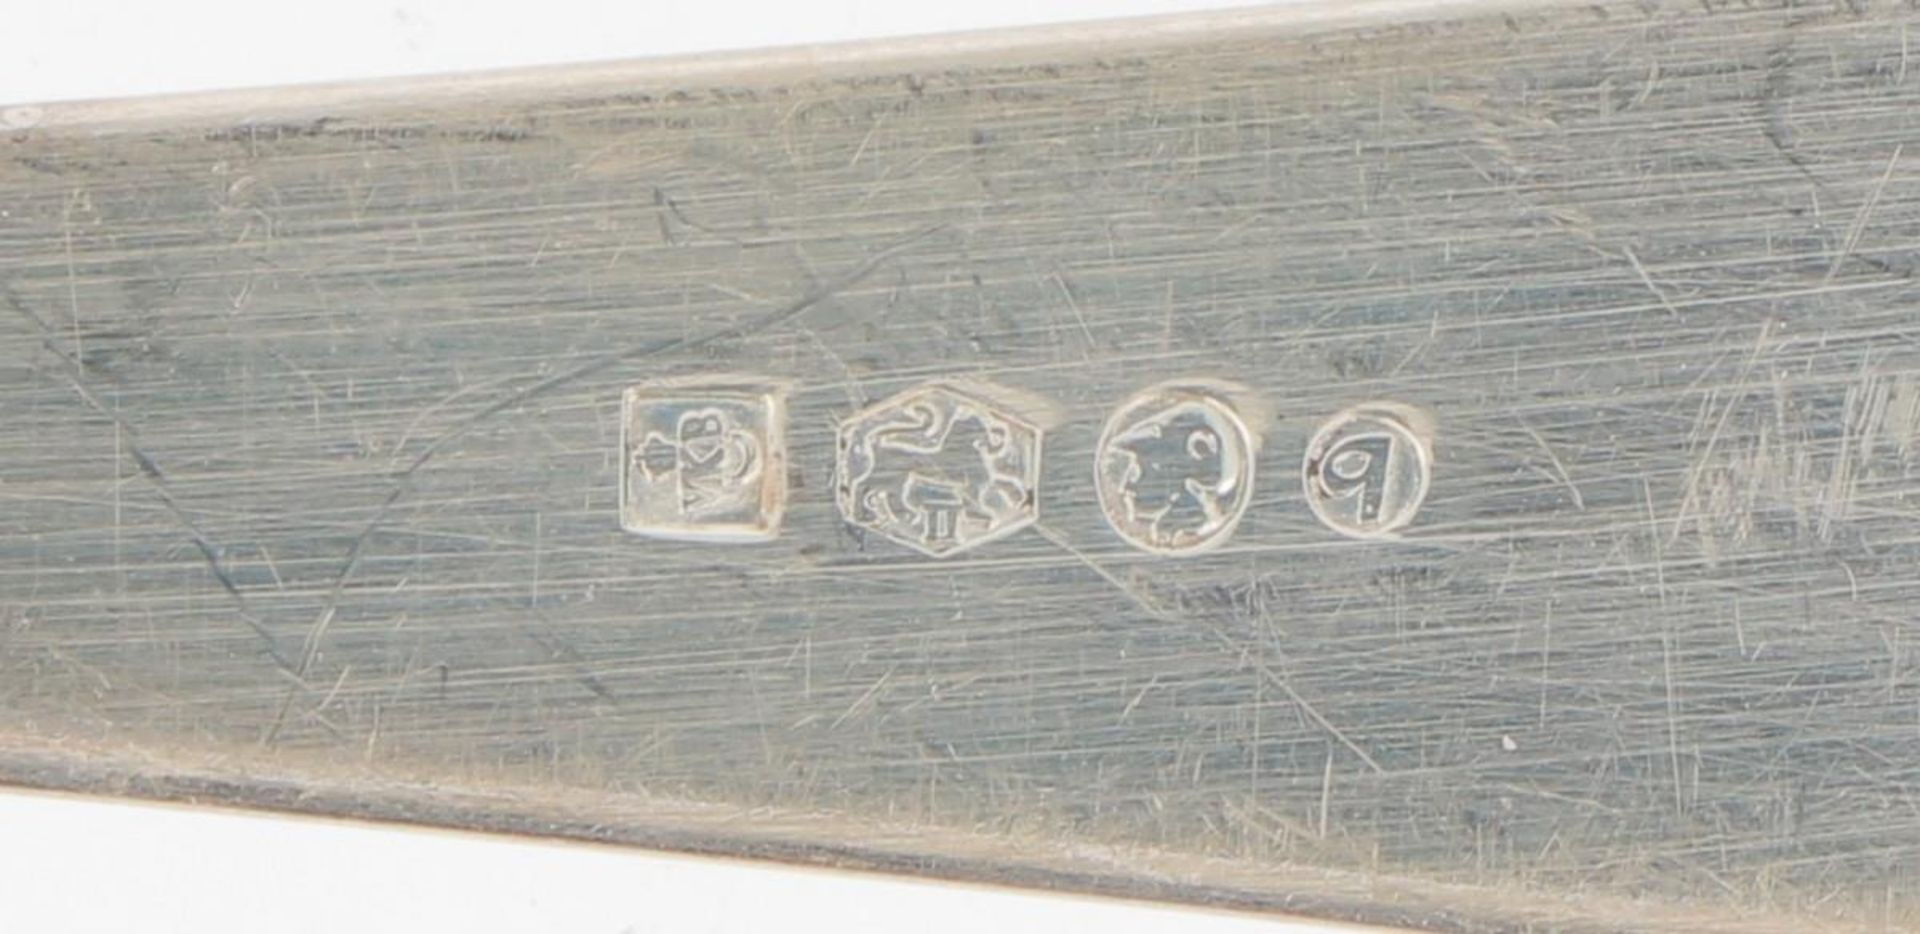 (2) piece set of ladles "Haags Lofje" silver. - Bild 3 aus 3